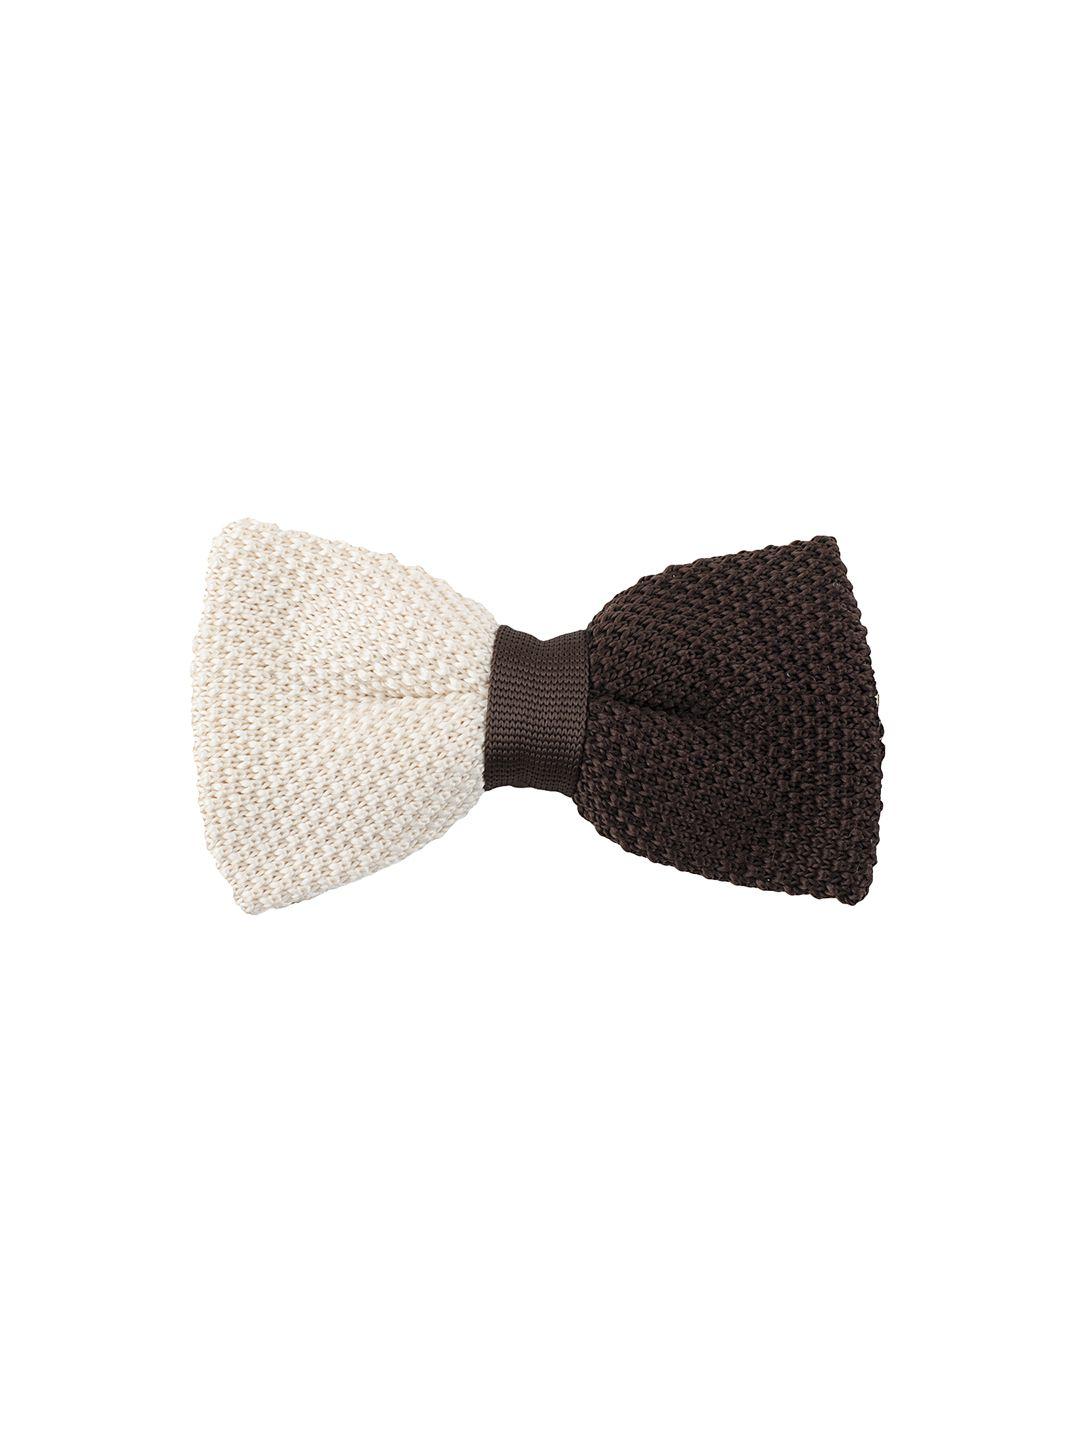 tossido beige & brown woven design bow tie